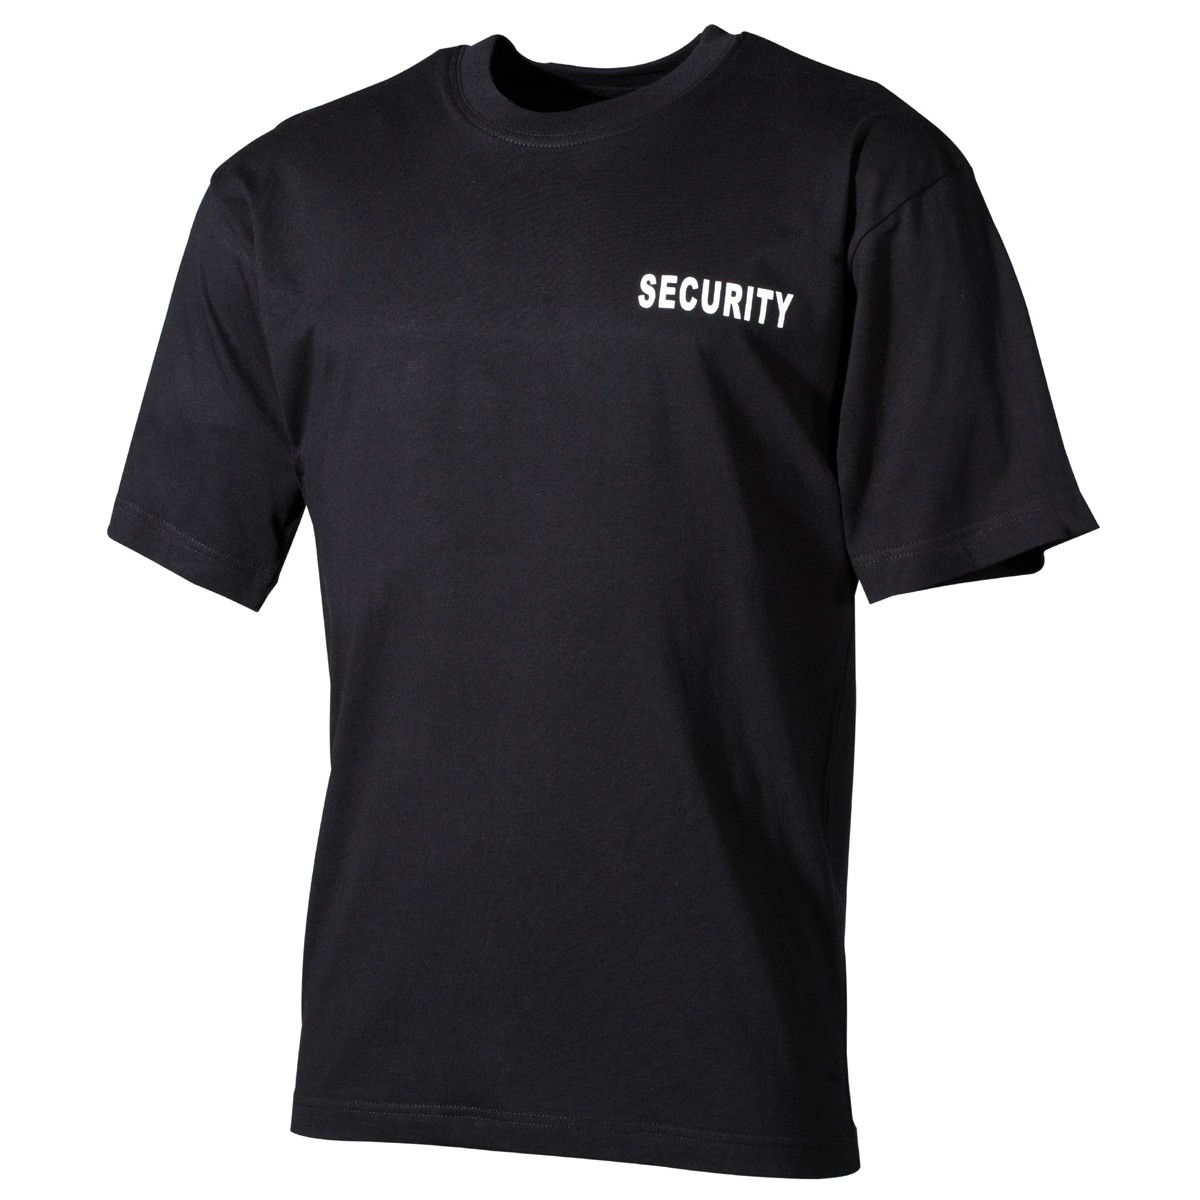 Tričko MFH Security - černé, M